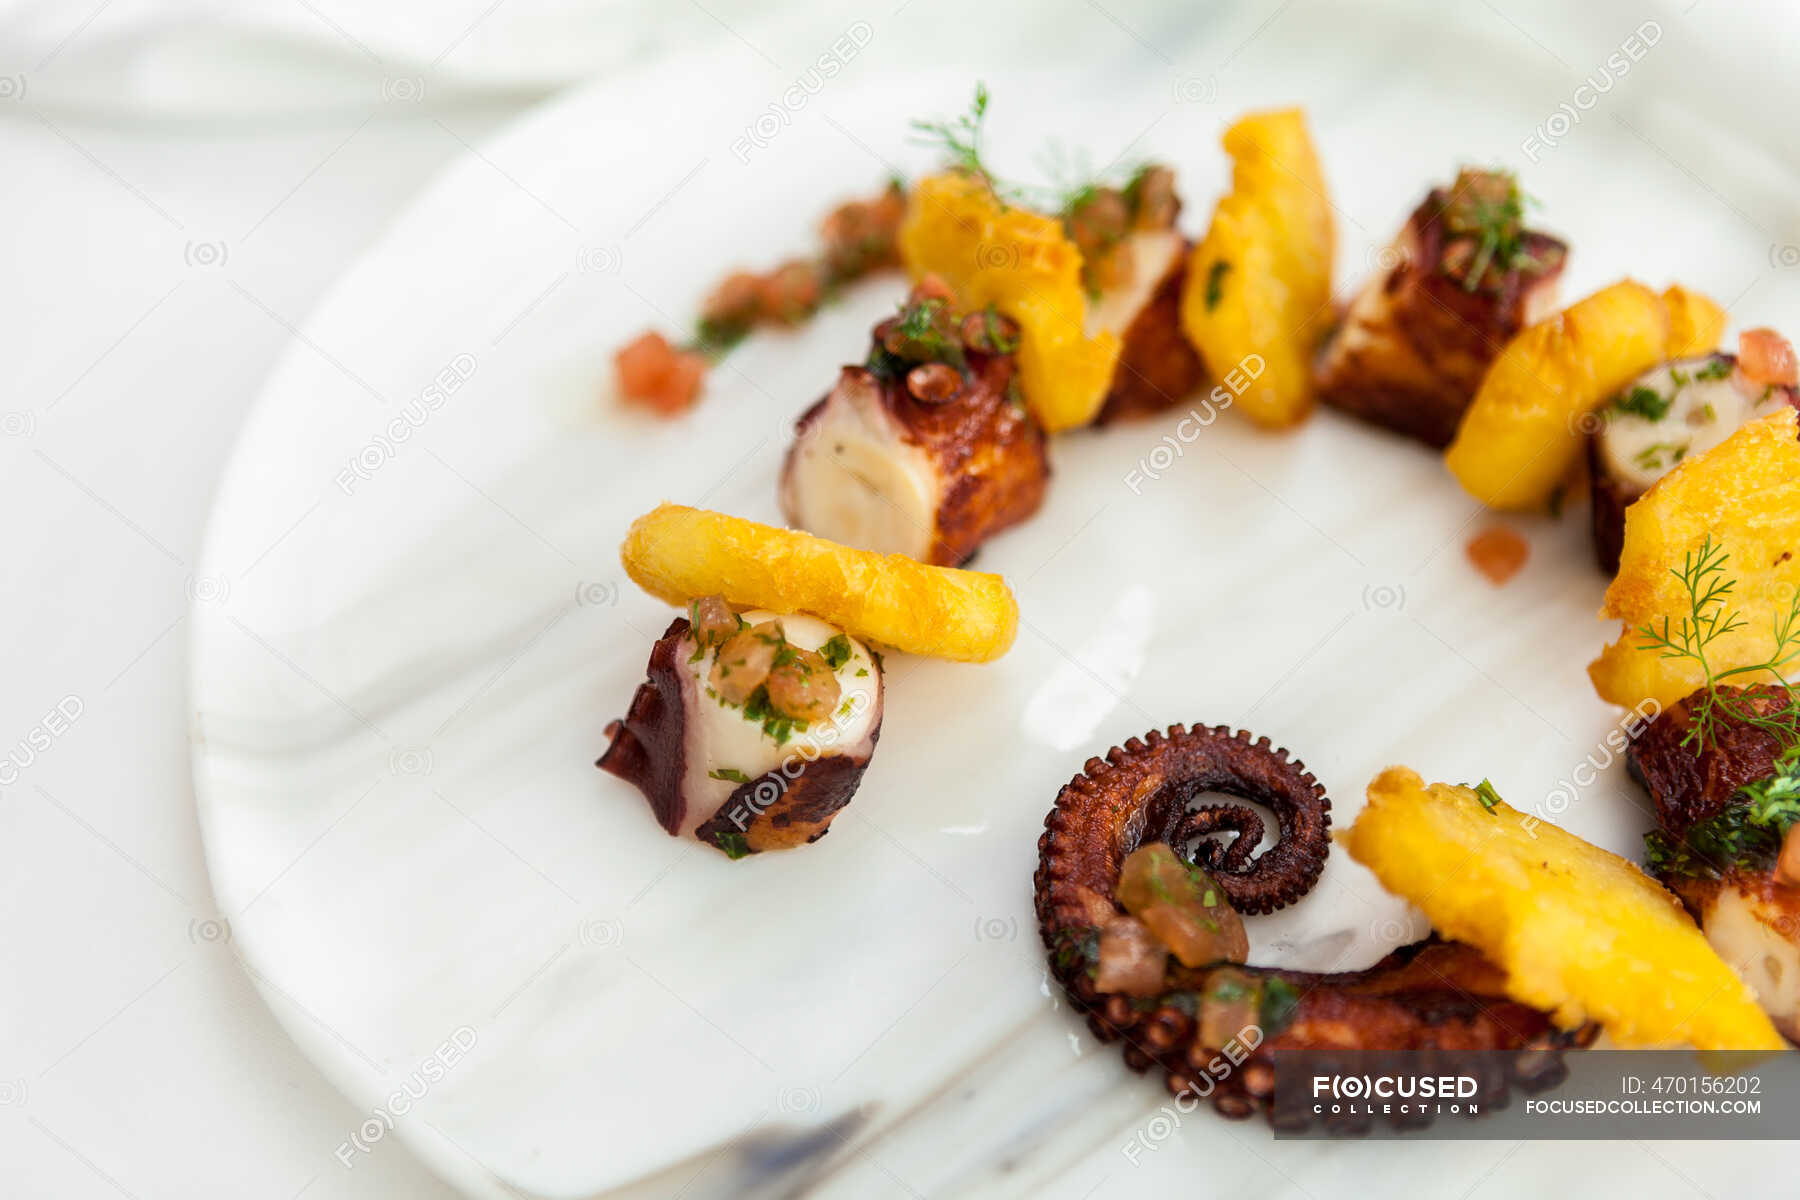 Spanish Octopus And Potatoes Tapa Fancy Tasty Stock Photo 470156202